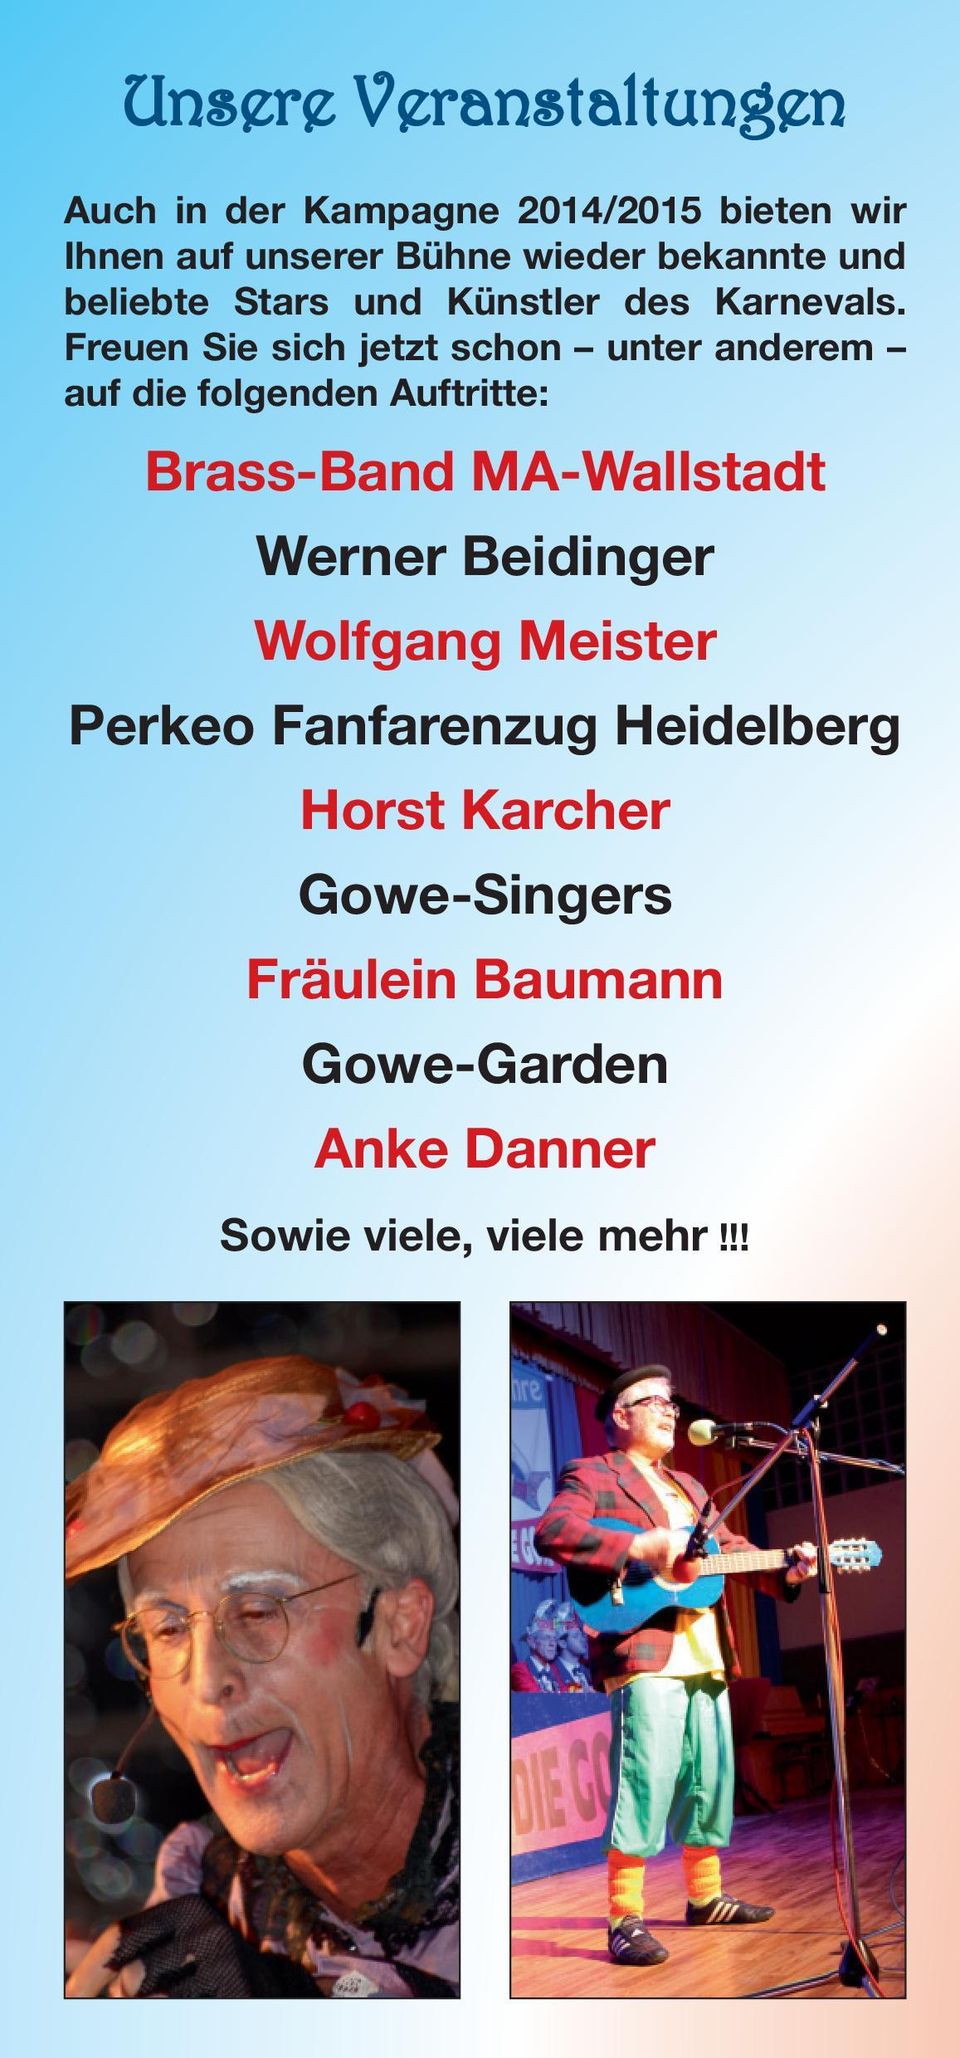 Freuen Sie sich jetzt schon unter anderem auf die folgenden Auftritte: Brass-Band MA-Wallstadt Werner